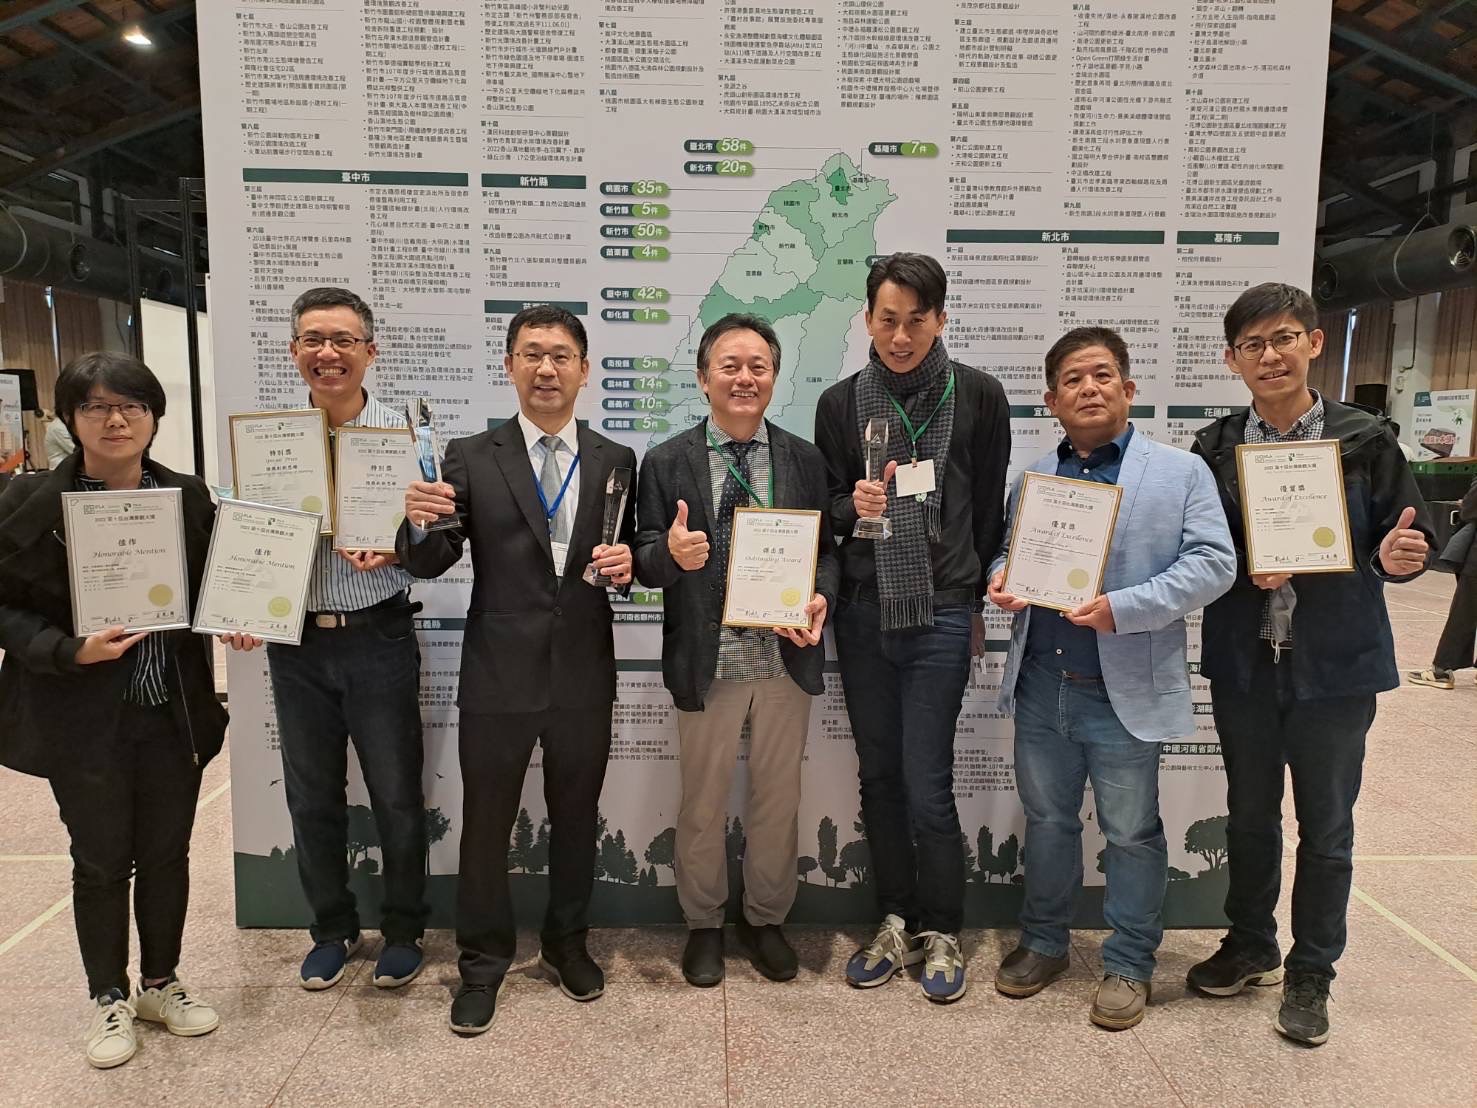 第十屆台灣景觀大獎頒獎 中市建設局榮獲7項大獎